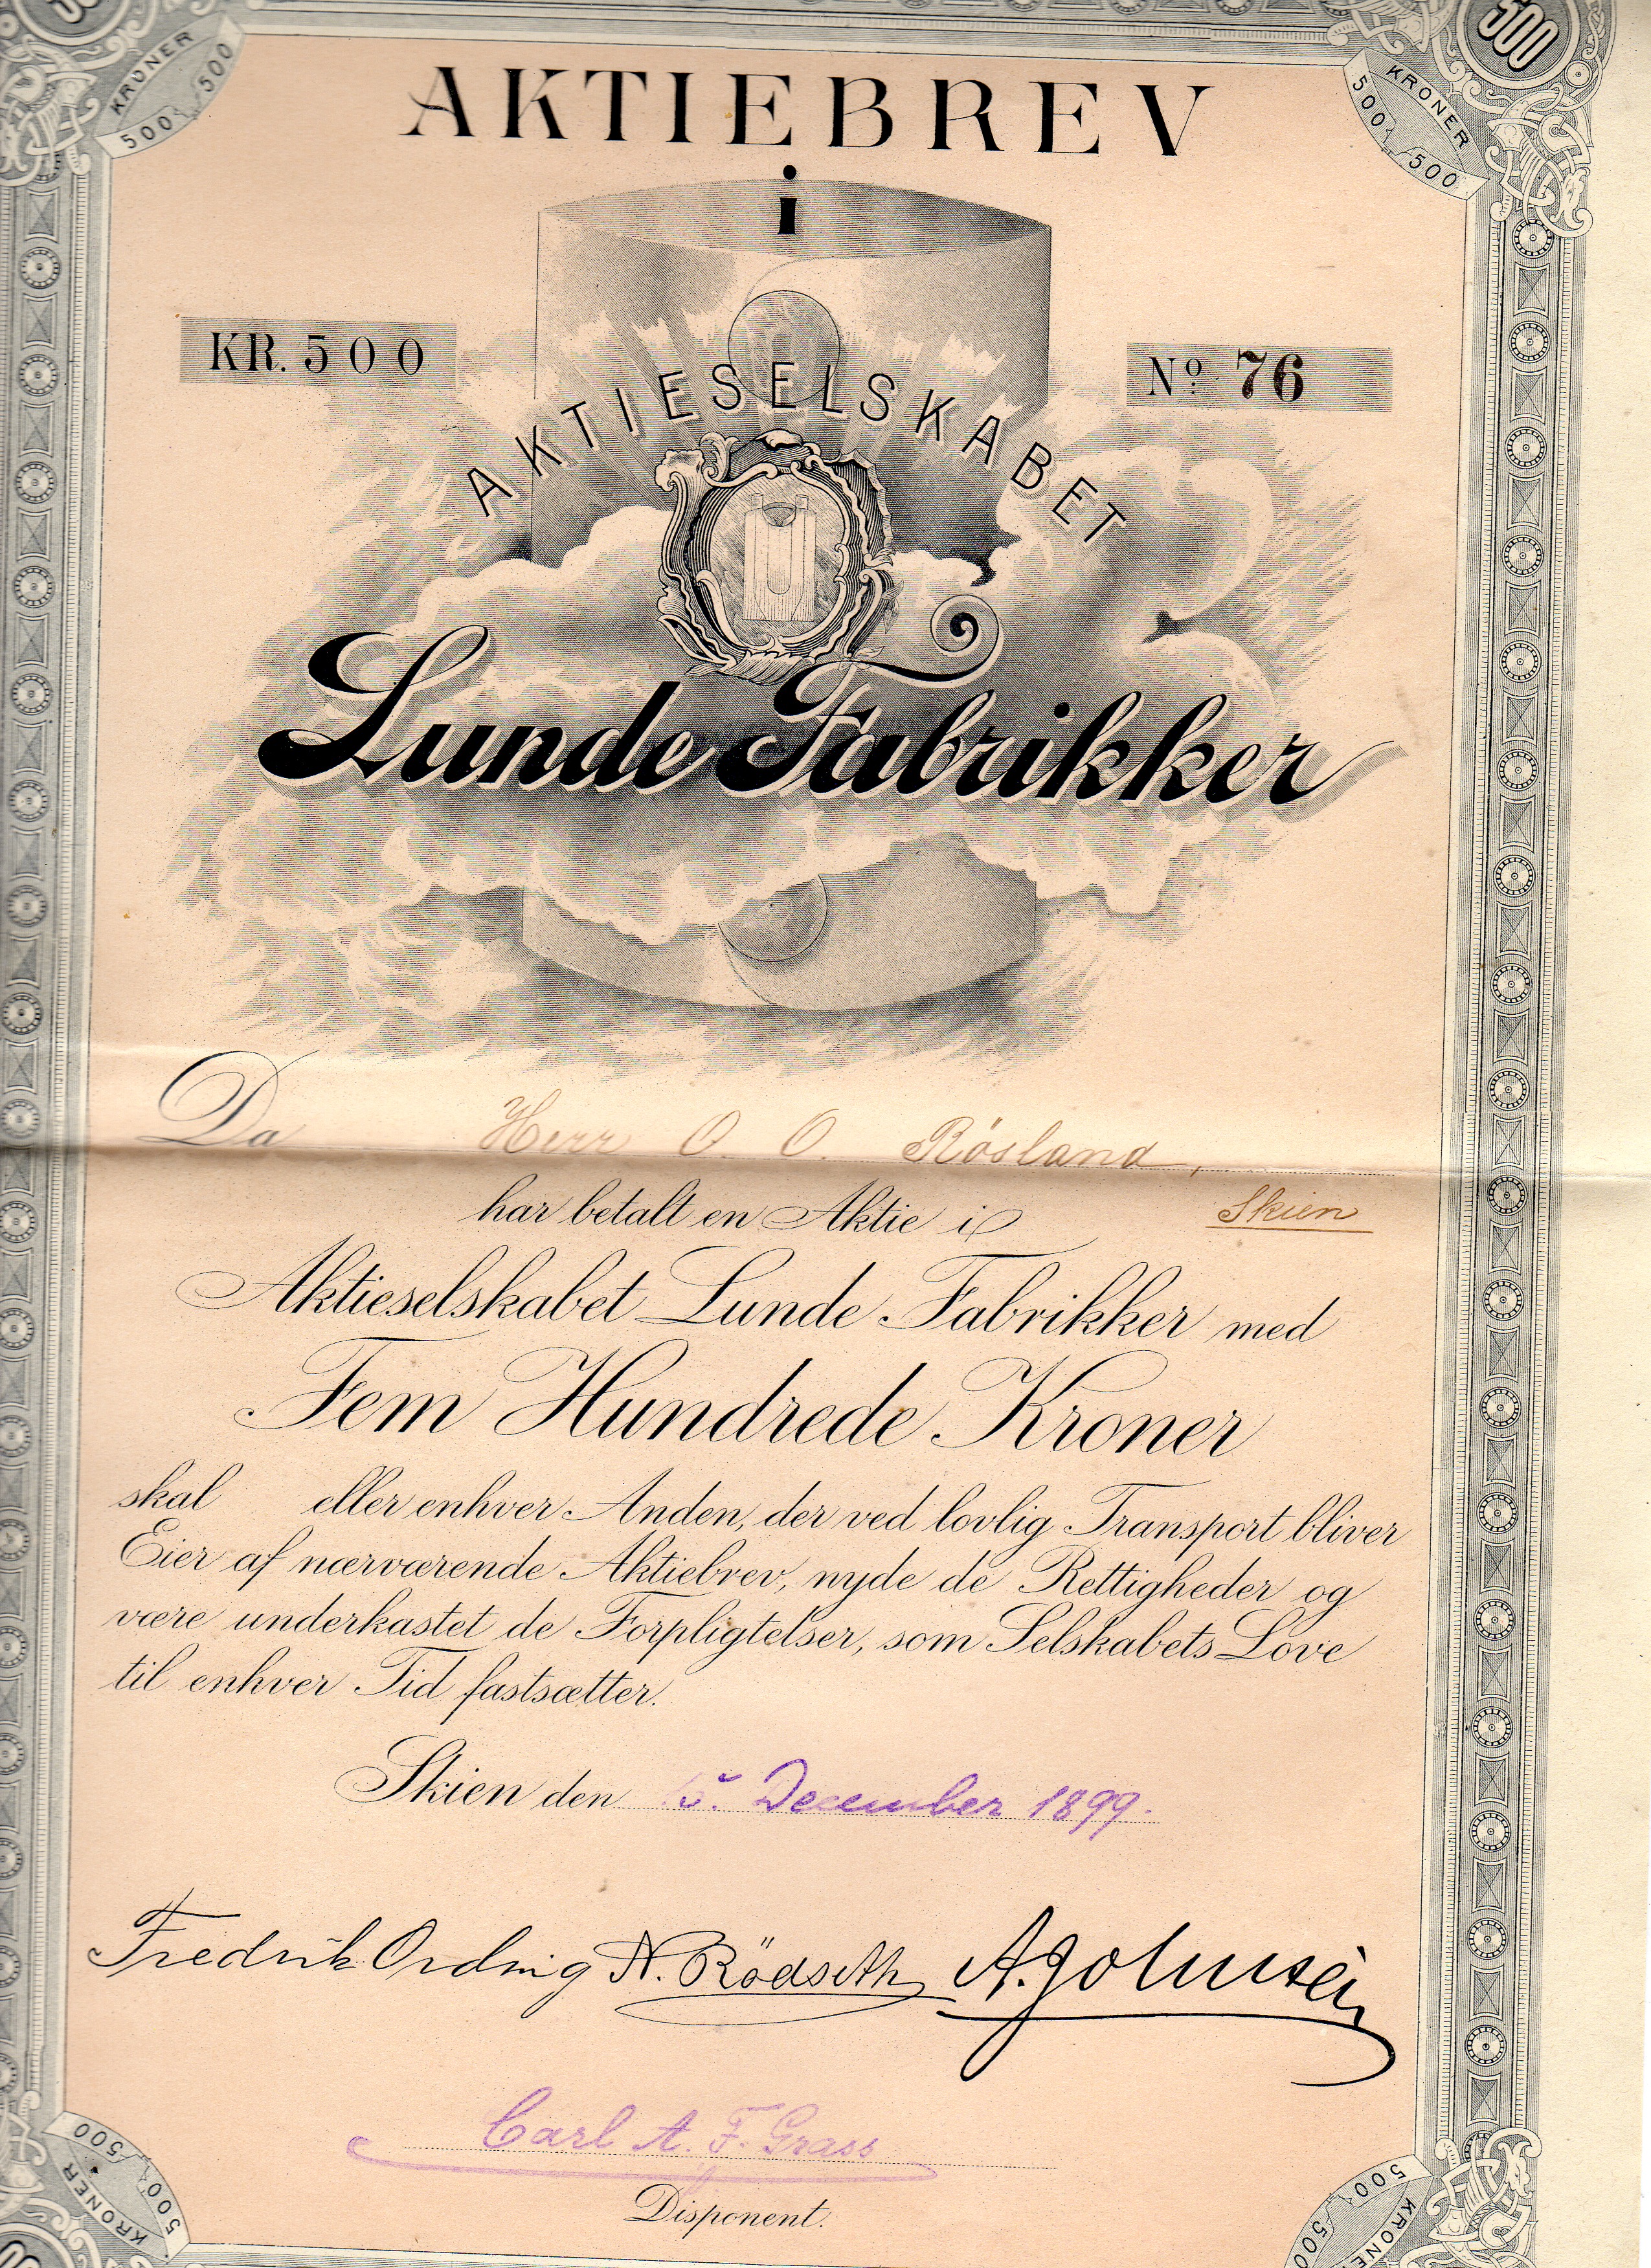 Lunde fabriker Skien 1899 Pål 500 no76 kv1 kuponger